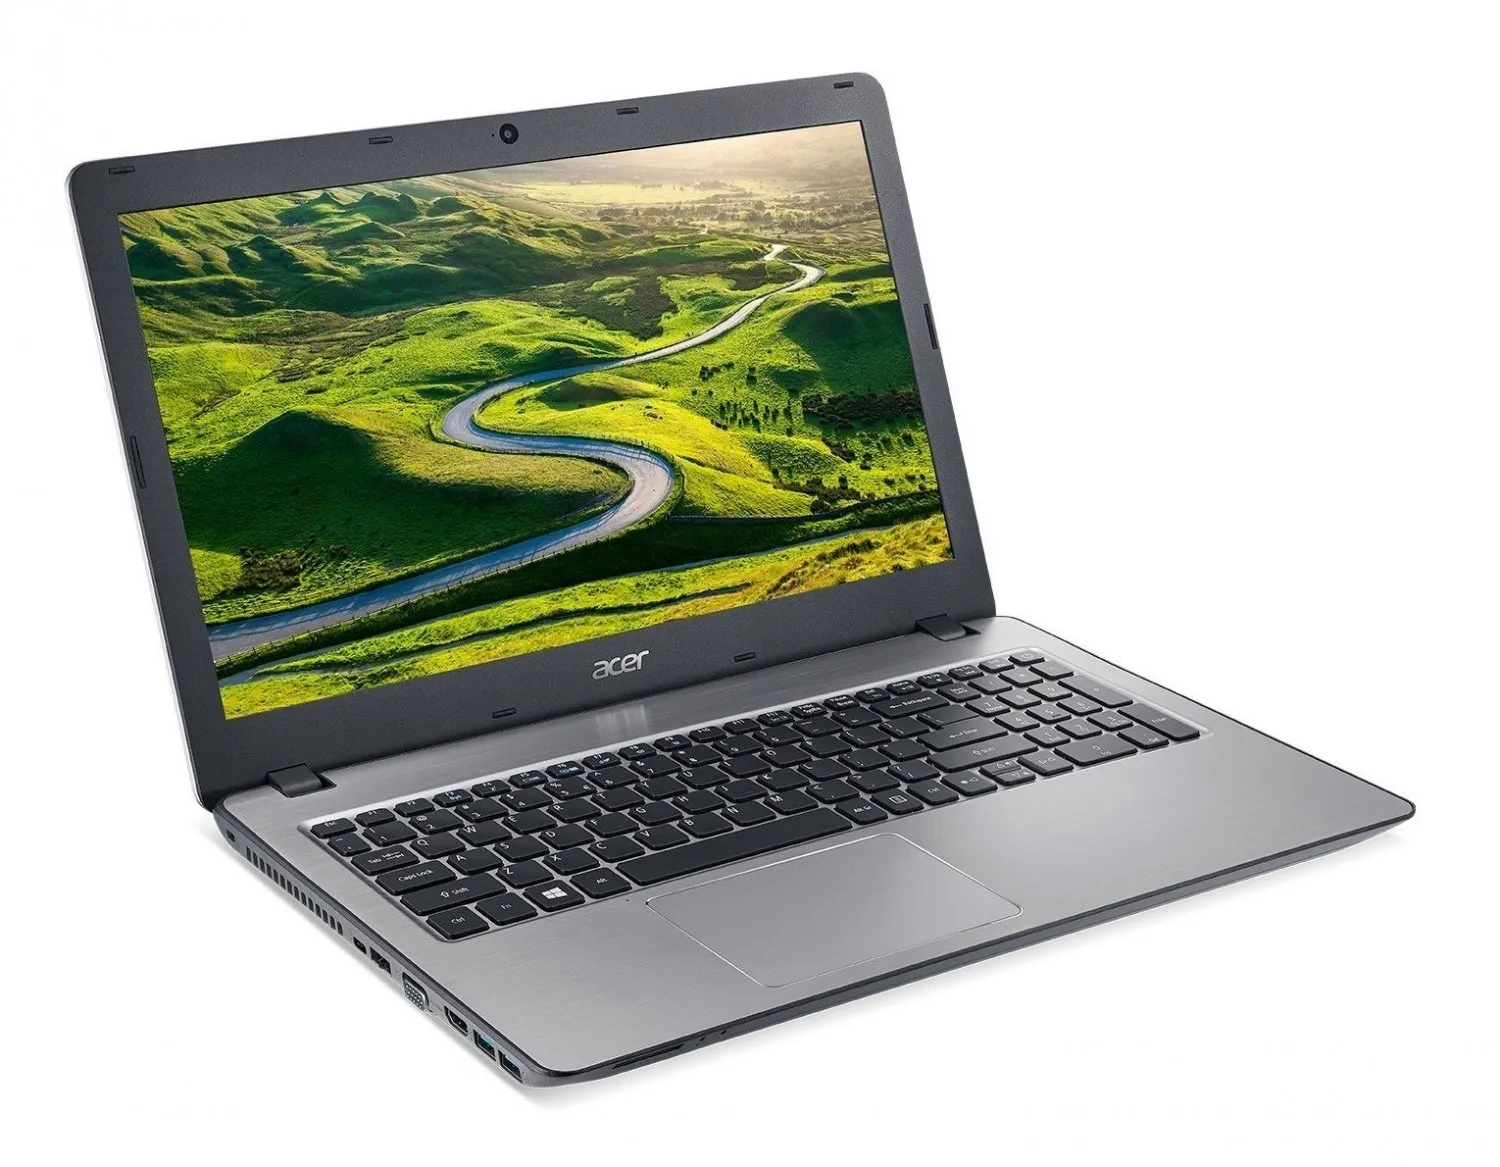 Noutbuk Acer ES15 / Celeron 3060/ DDR3 2 GB/ 500GB HDD /15.6" HD LED/ UMA/ DVD / RUS#1